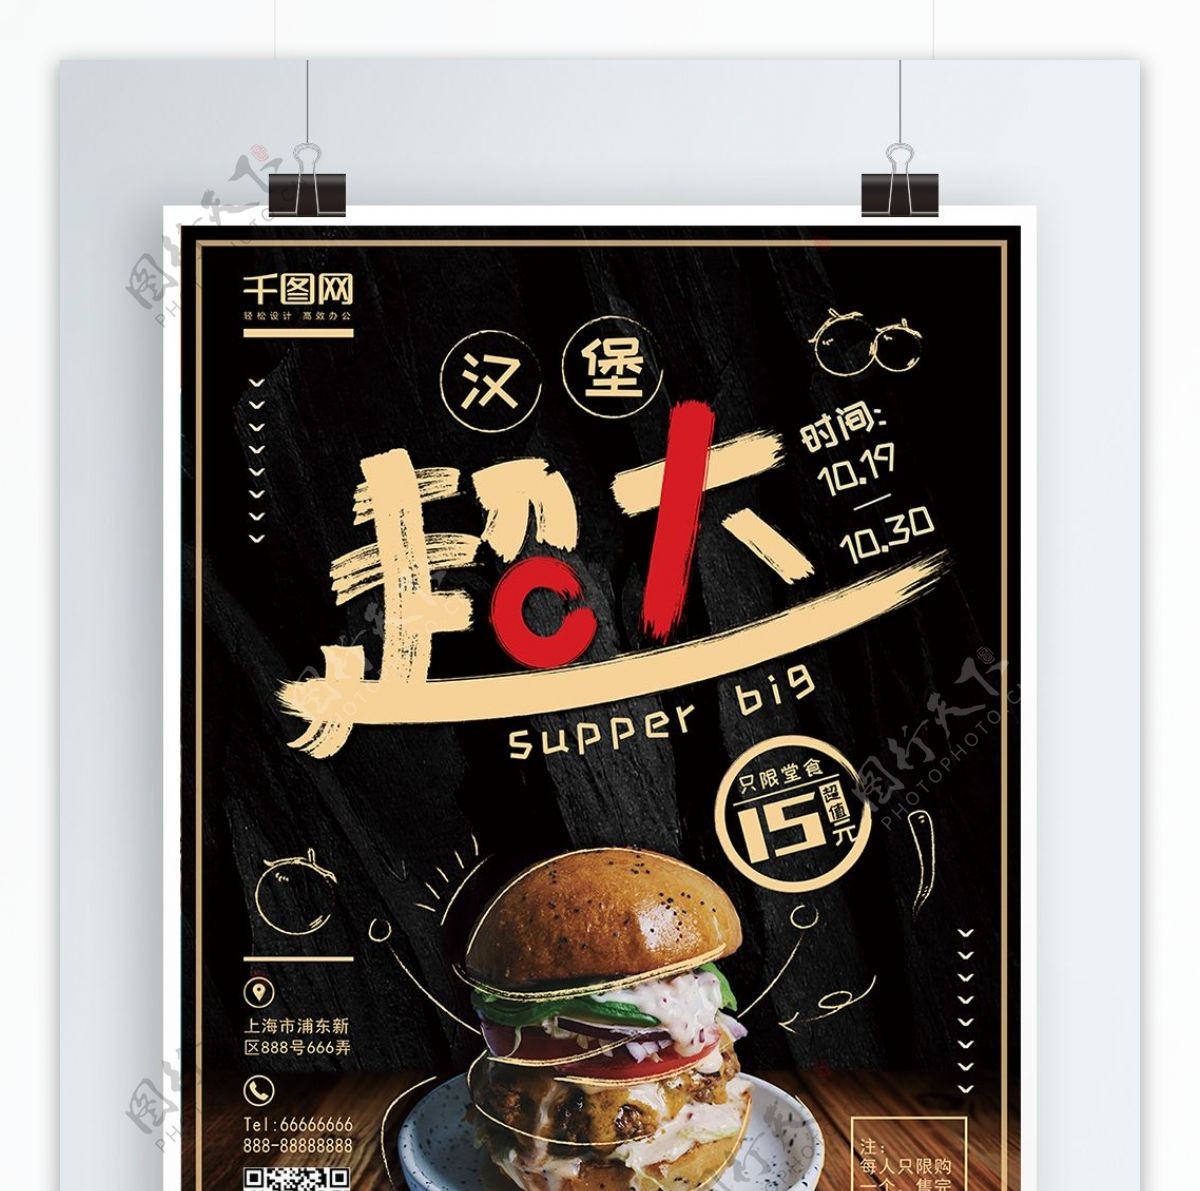 原创手绘风美味超大汉堡宣传促销海报